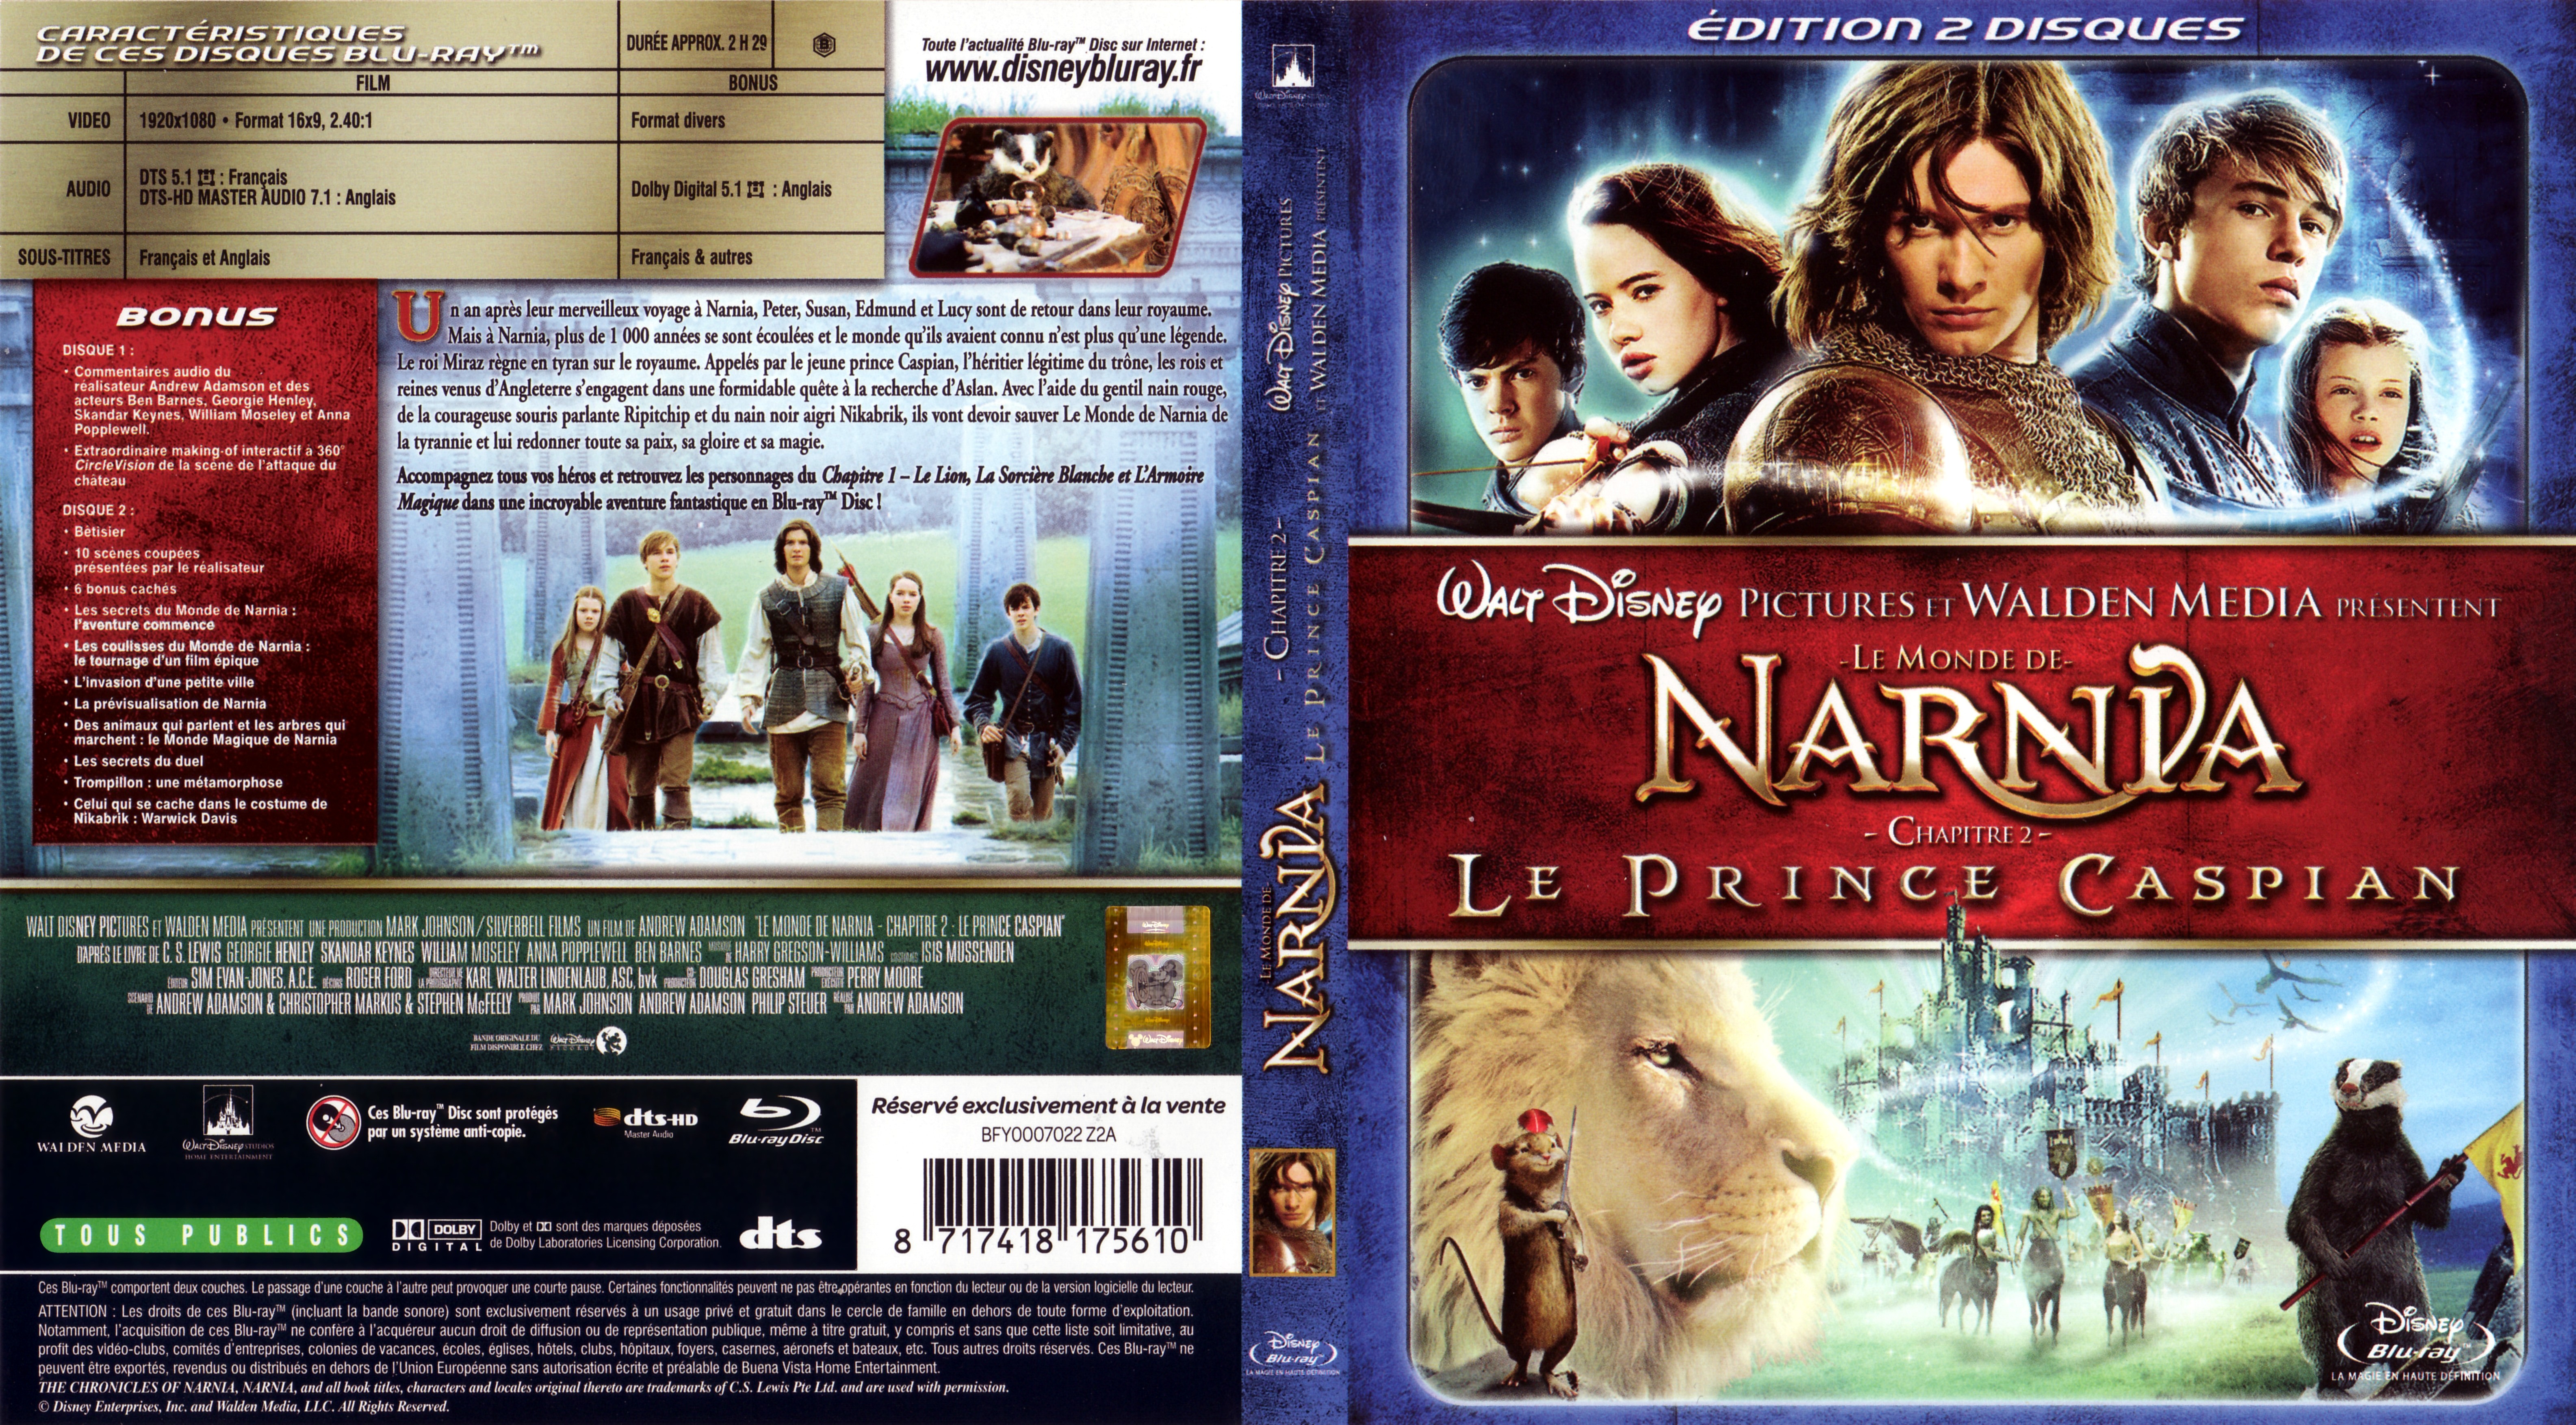 Jaquette DVD Le Monde de Narnia chapitre 2 (BLU-RAY)